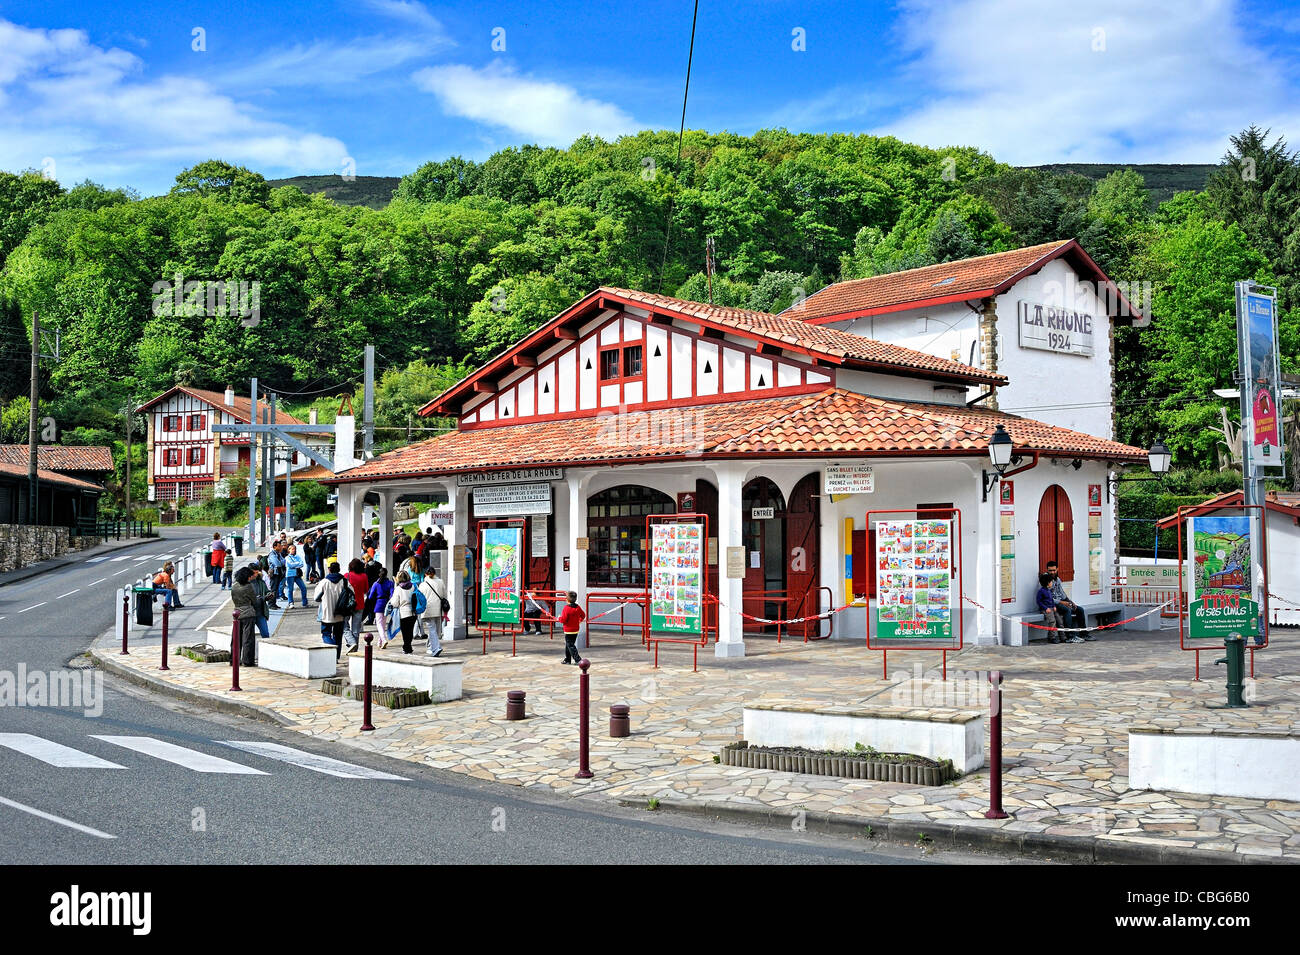 Treno storico: la stazione di treno de la Rhune, Francia. Foto Stock